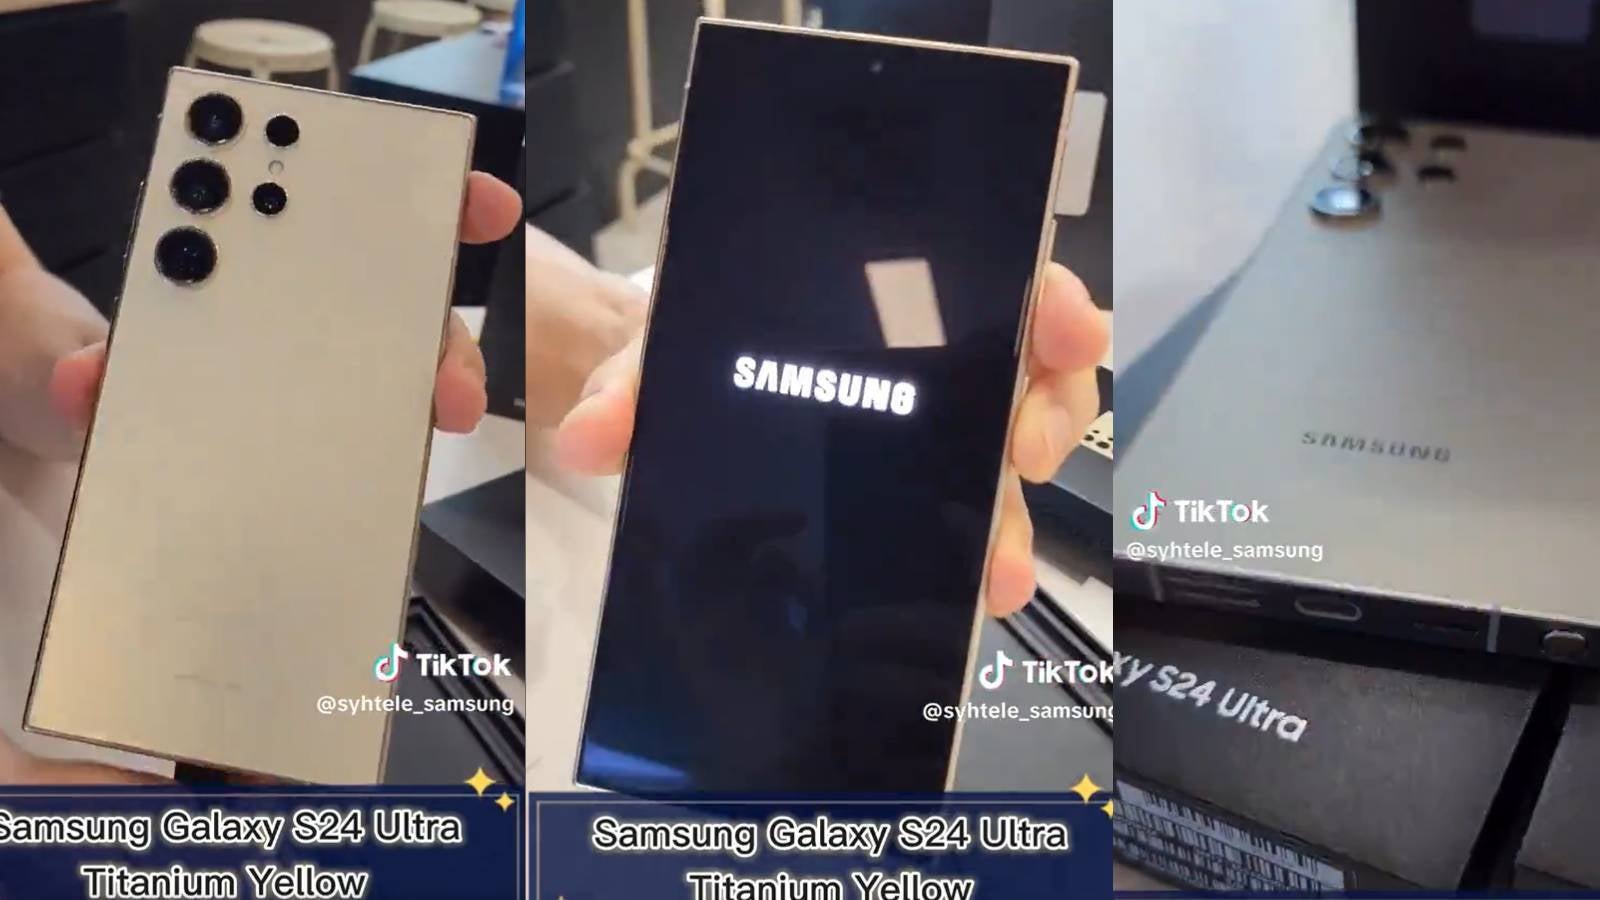 L'utilisateur X joue avec le feu en publiant des vidéos de déballage du Galaxy S24 Ultra en trois couleurs